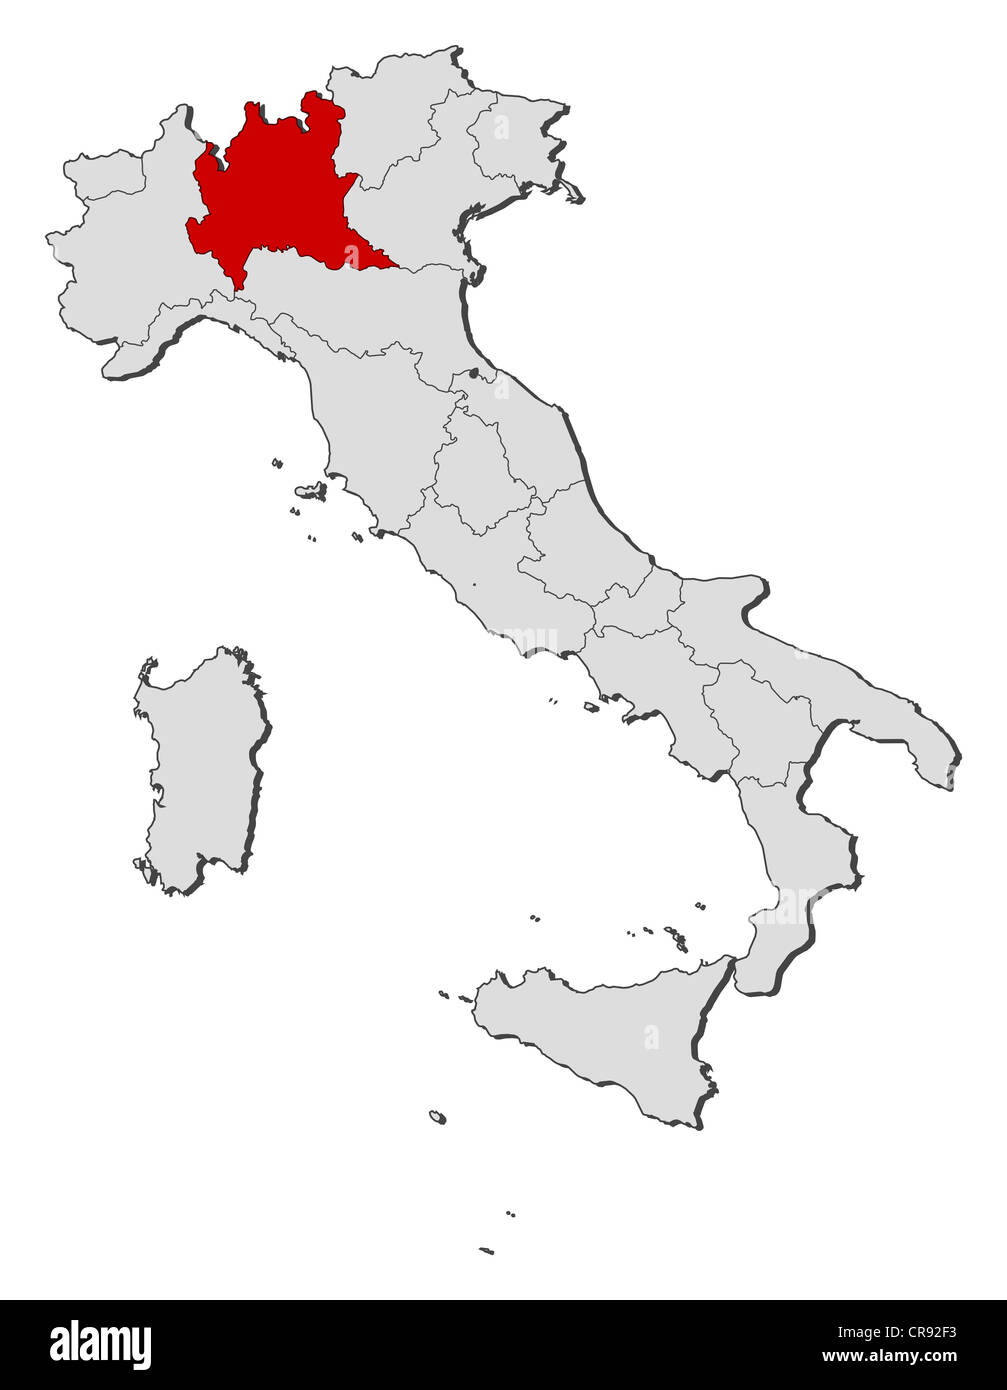 Carte politique de l'Italie avec plusieurs régions où la Lombardie est mis en évidence. Banque D'Images